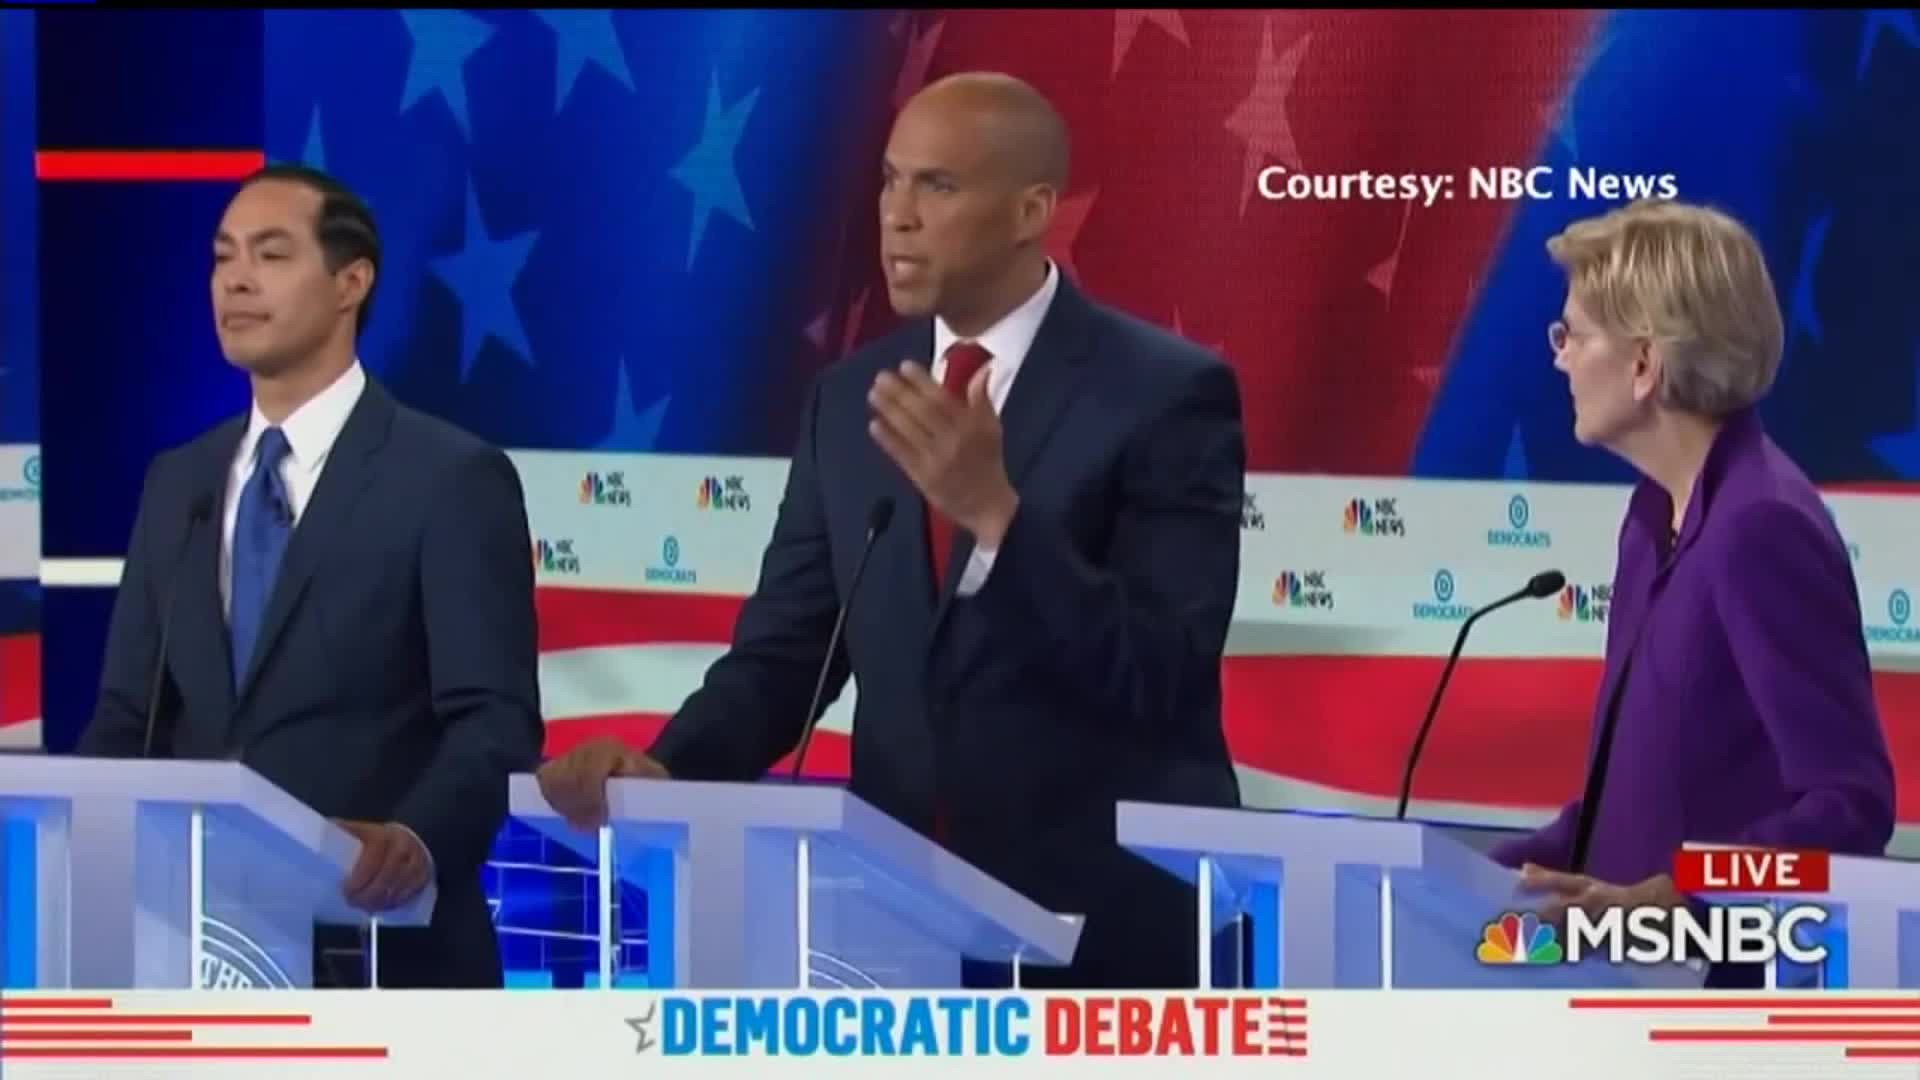 Democratic debate recap and lineup